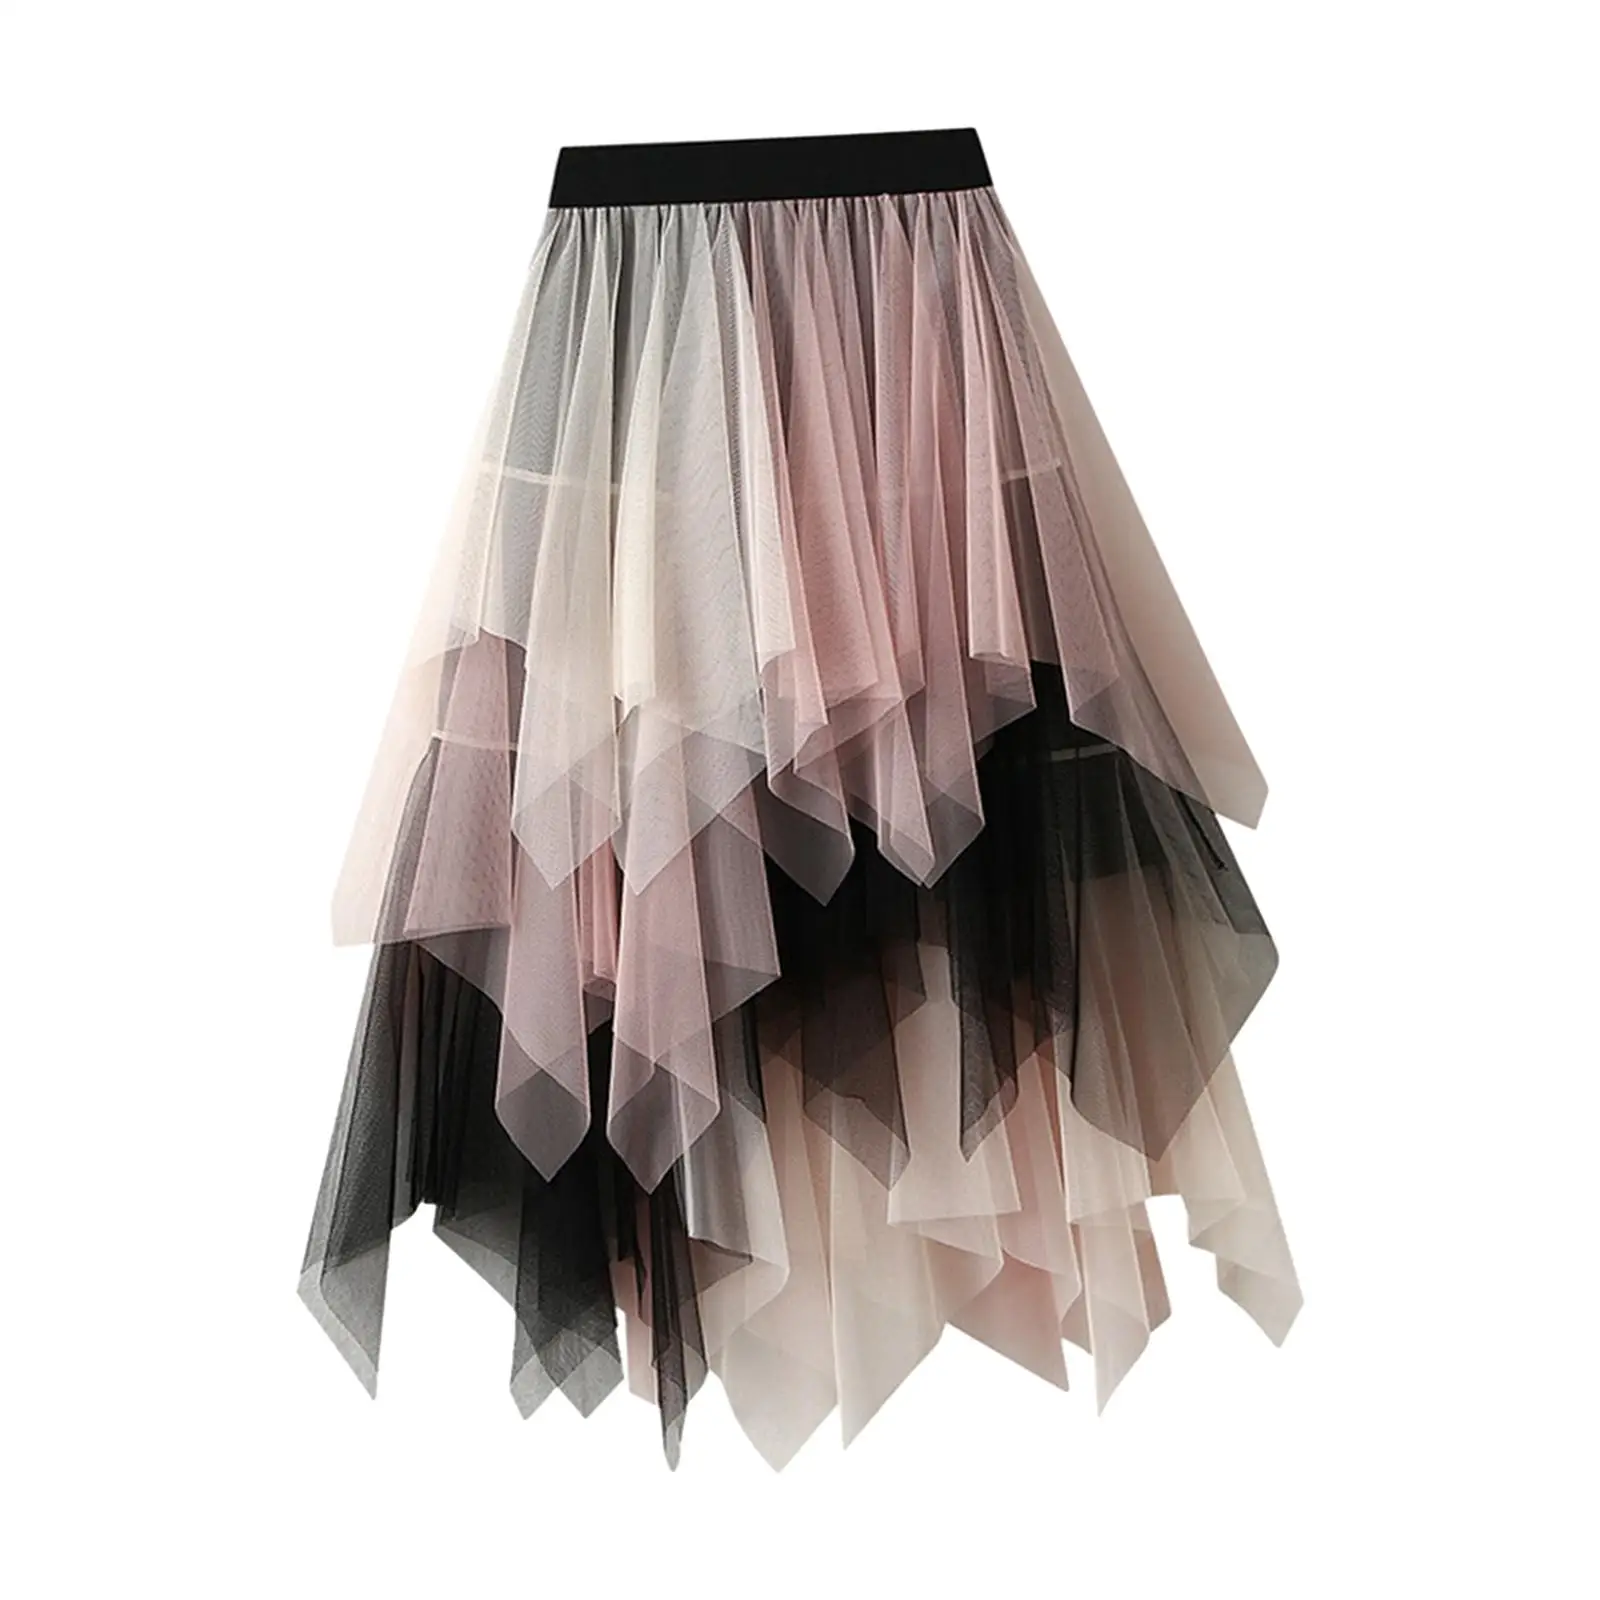 Women`s Tulle Skirt Half Skirt A Line Trendy Dress MIDI Length Fairy Skirt Tutu Skirt for Casual Wedding Prom Evening Party